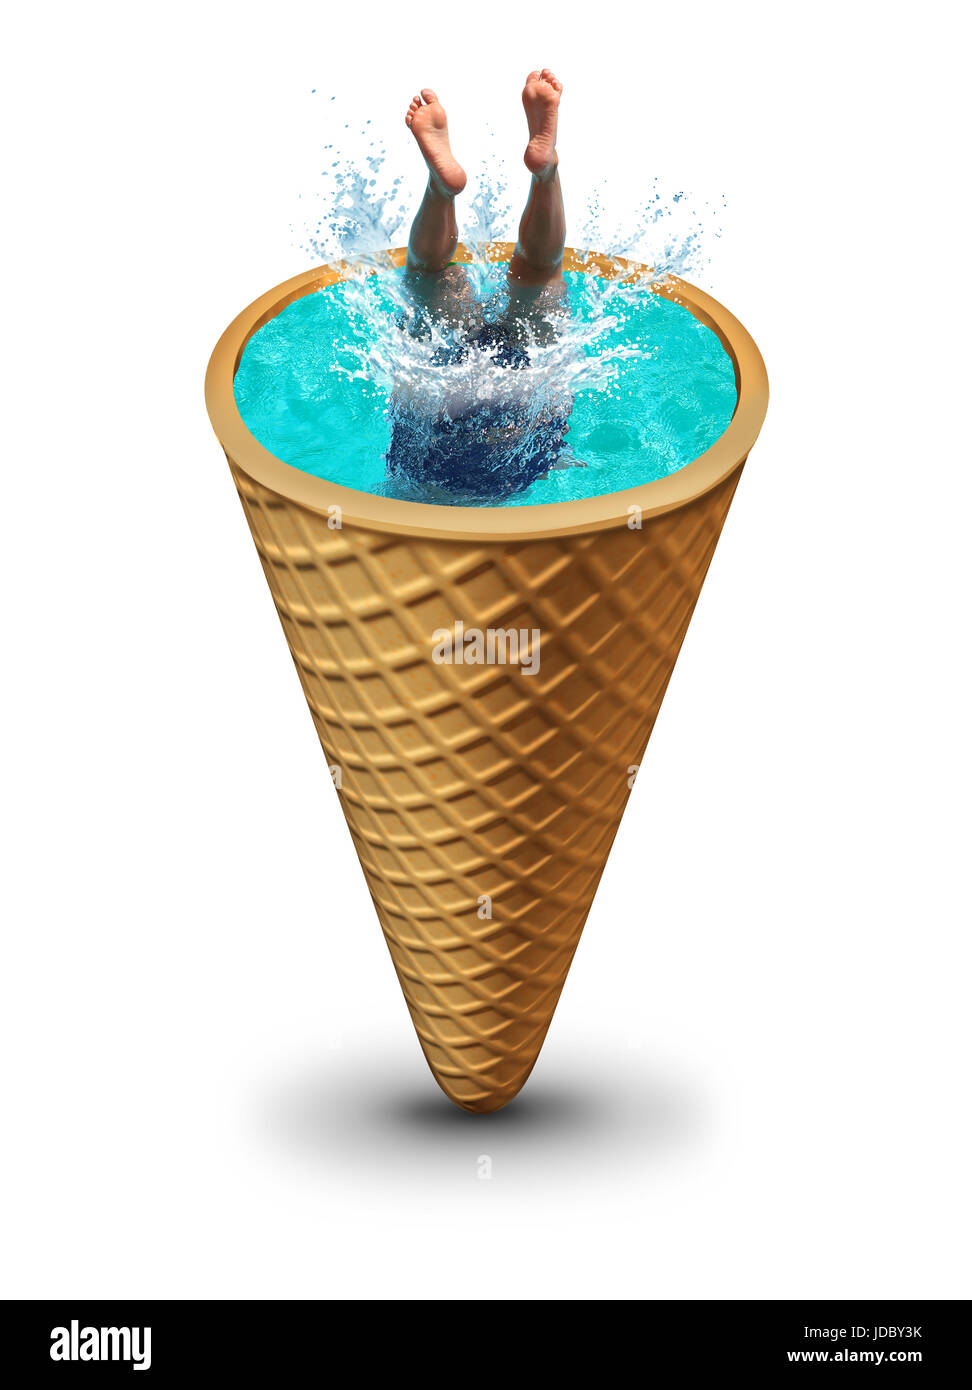 Sommer Pool Spaß wie ein Mensch Tauchen ins erfrischende Wasser macht einen Sprung in eine Eiswaffel als surrealistische Symbol für die heiße Jahreszeit. Stockfoto